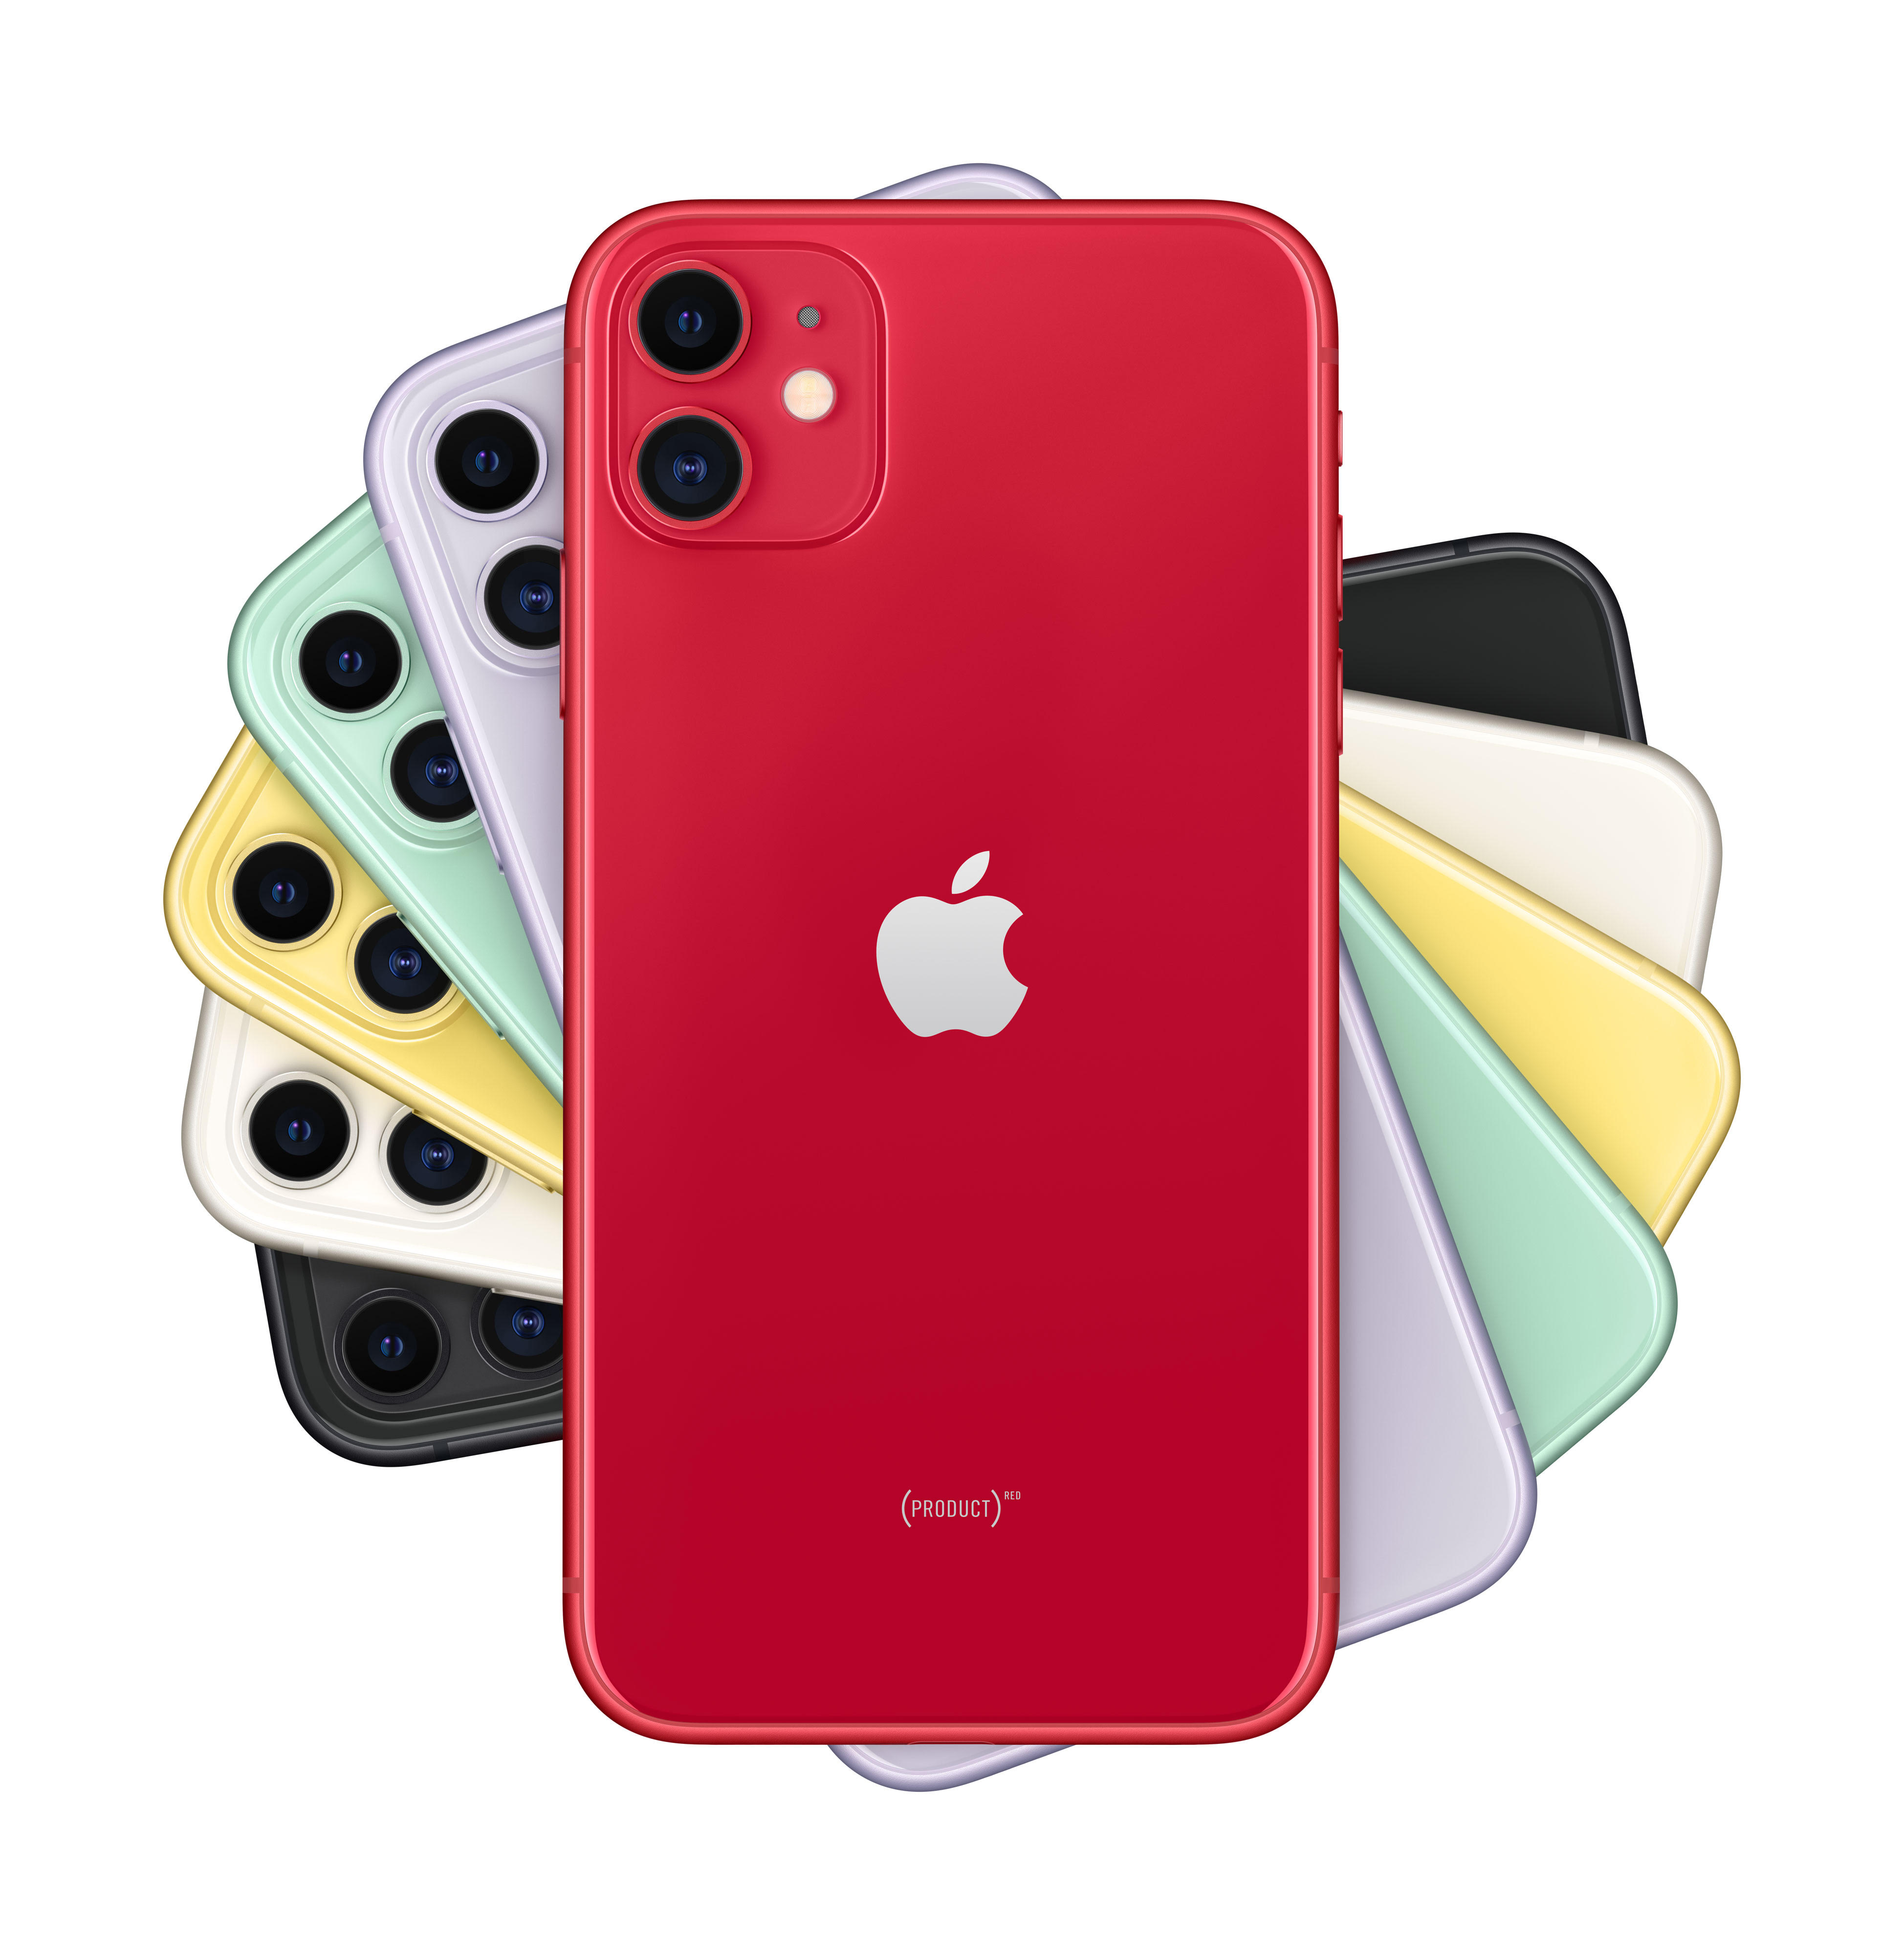 iphone 11 большой выбор цветов корпуса: фиолетовый, черный, зеленый, белый, желтый и красный